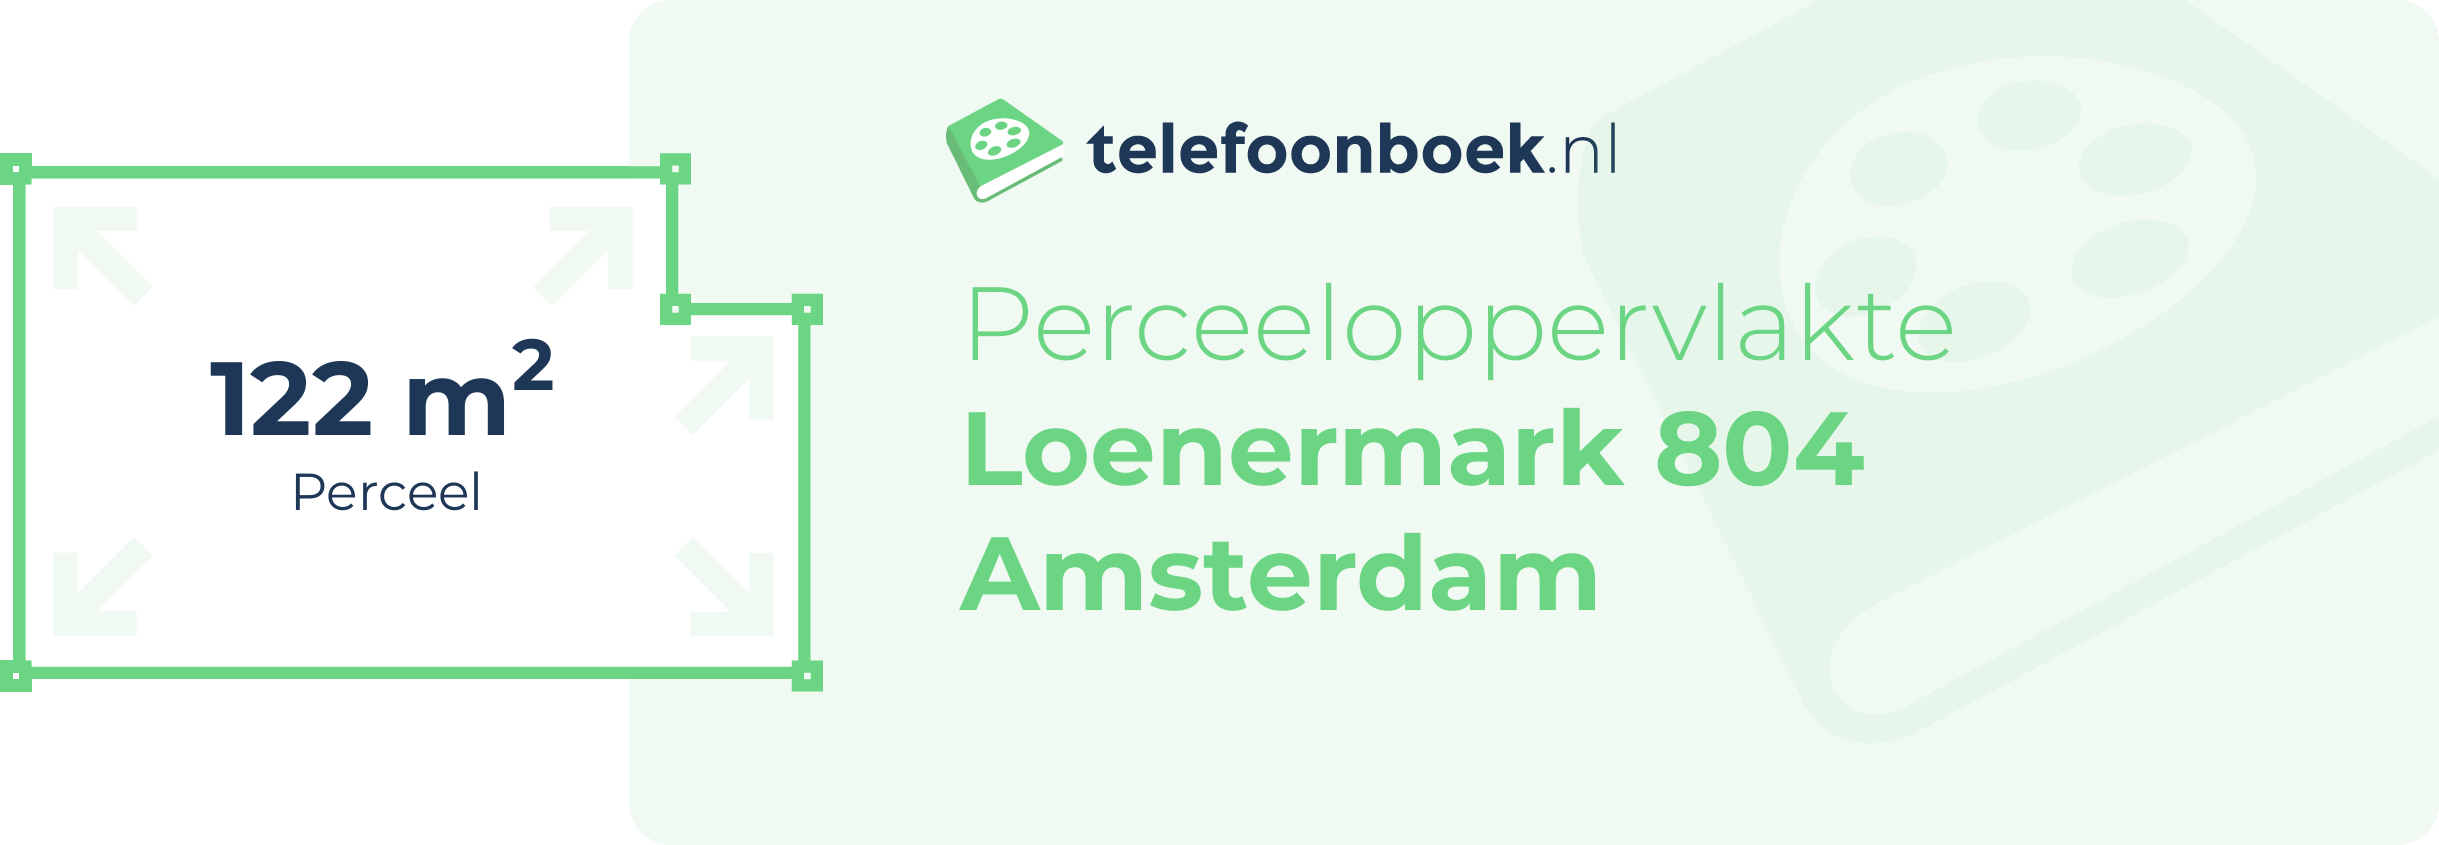 Perceeloppervlakte Loenermark 804 Amsterdam